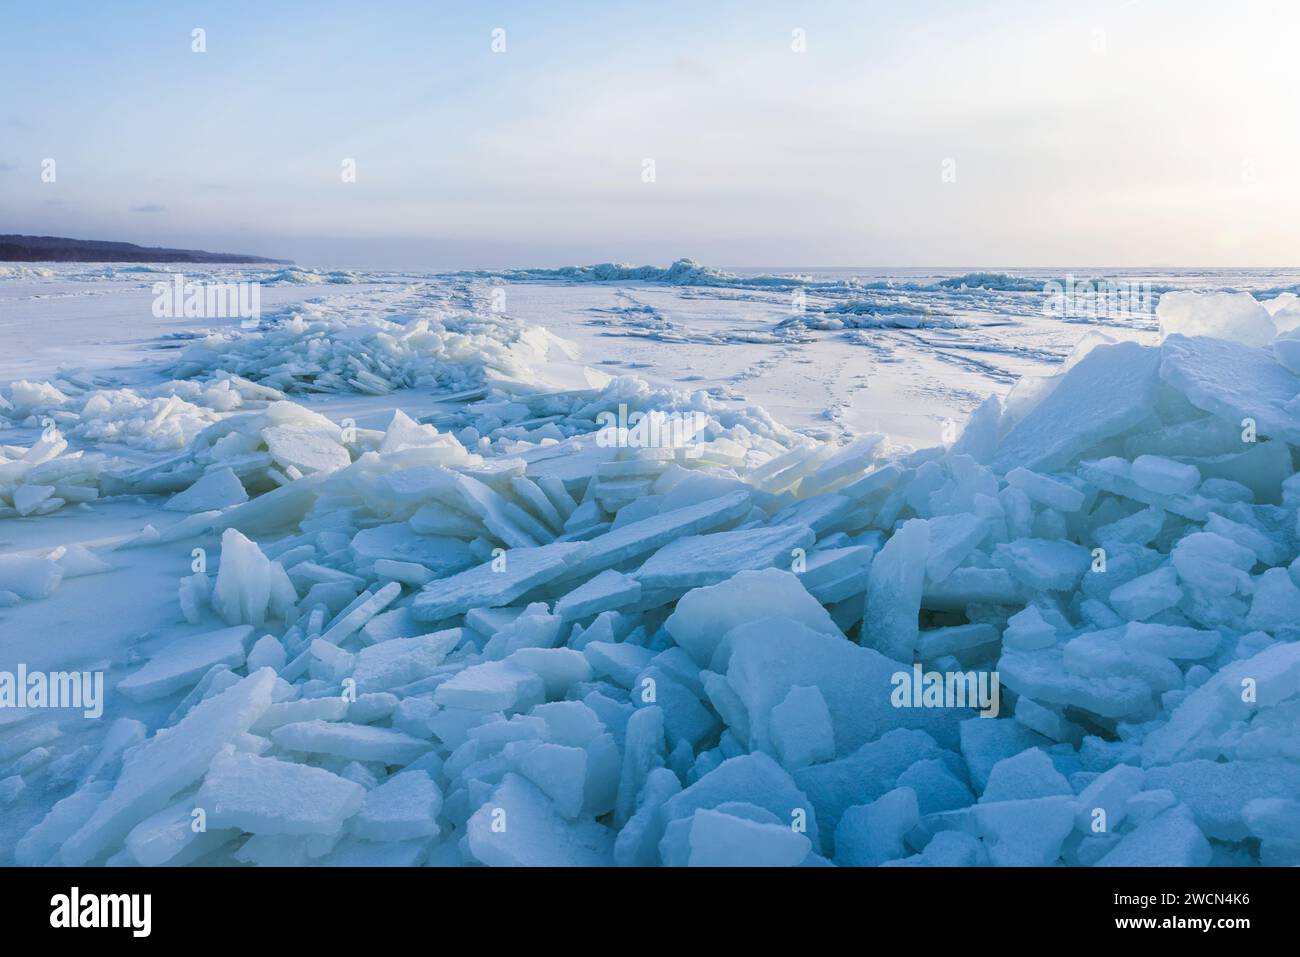 Photo de paysage avec des bosses de glace et de la neige sur une surface gelée de la mer Baltique par une journée ensoleillée d'hiver Banque D'Images